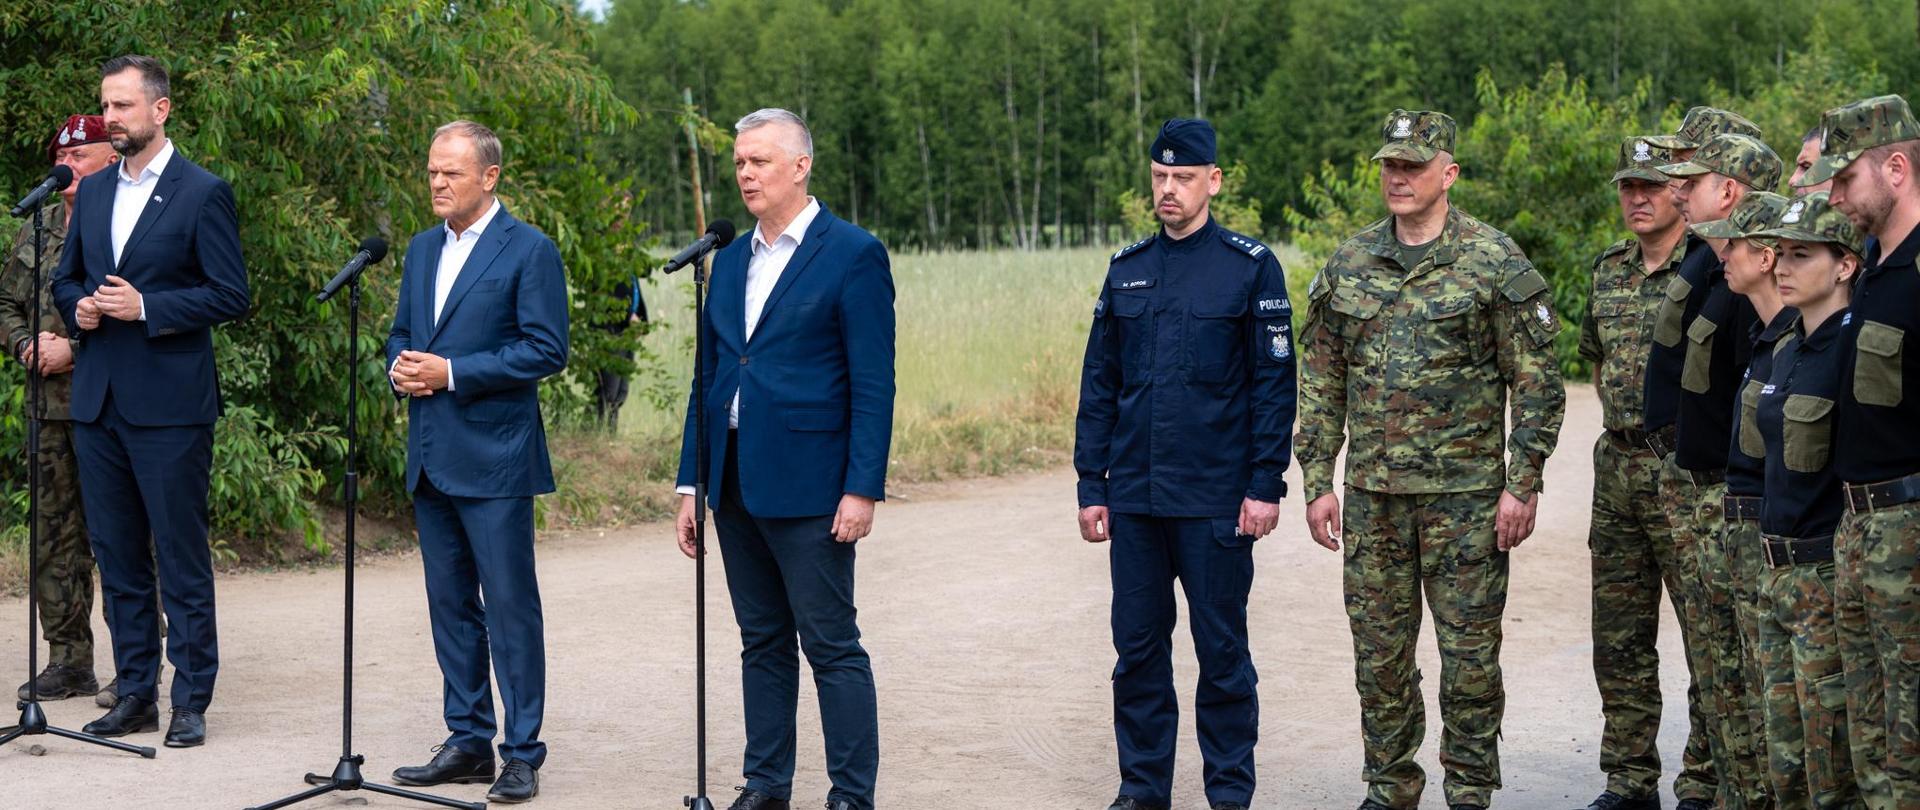 Od lewej wicepremier Kosiniak-Kamysz, premier Tusk i minister Siemoniak stoją przy mikrofonach. Po prawej stronie ministra Siemoniaka grupa funkcjonariuszy straży granicznej. W tle łąka i las. 